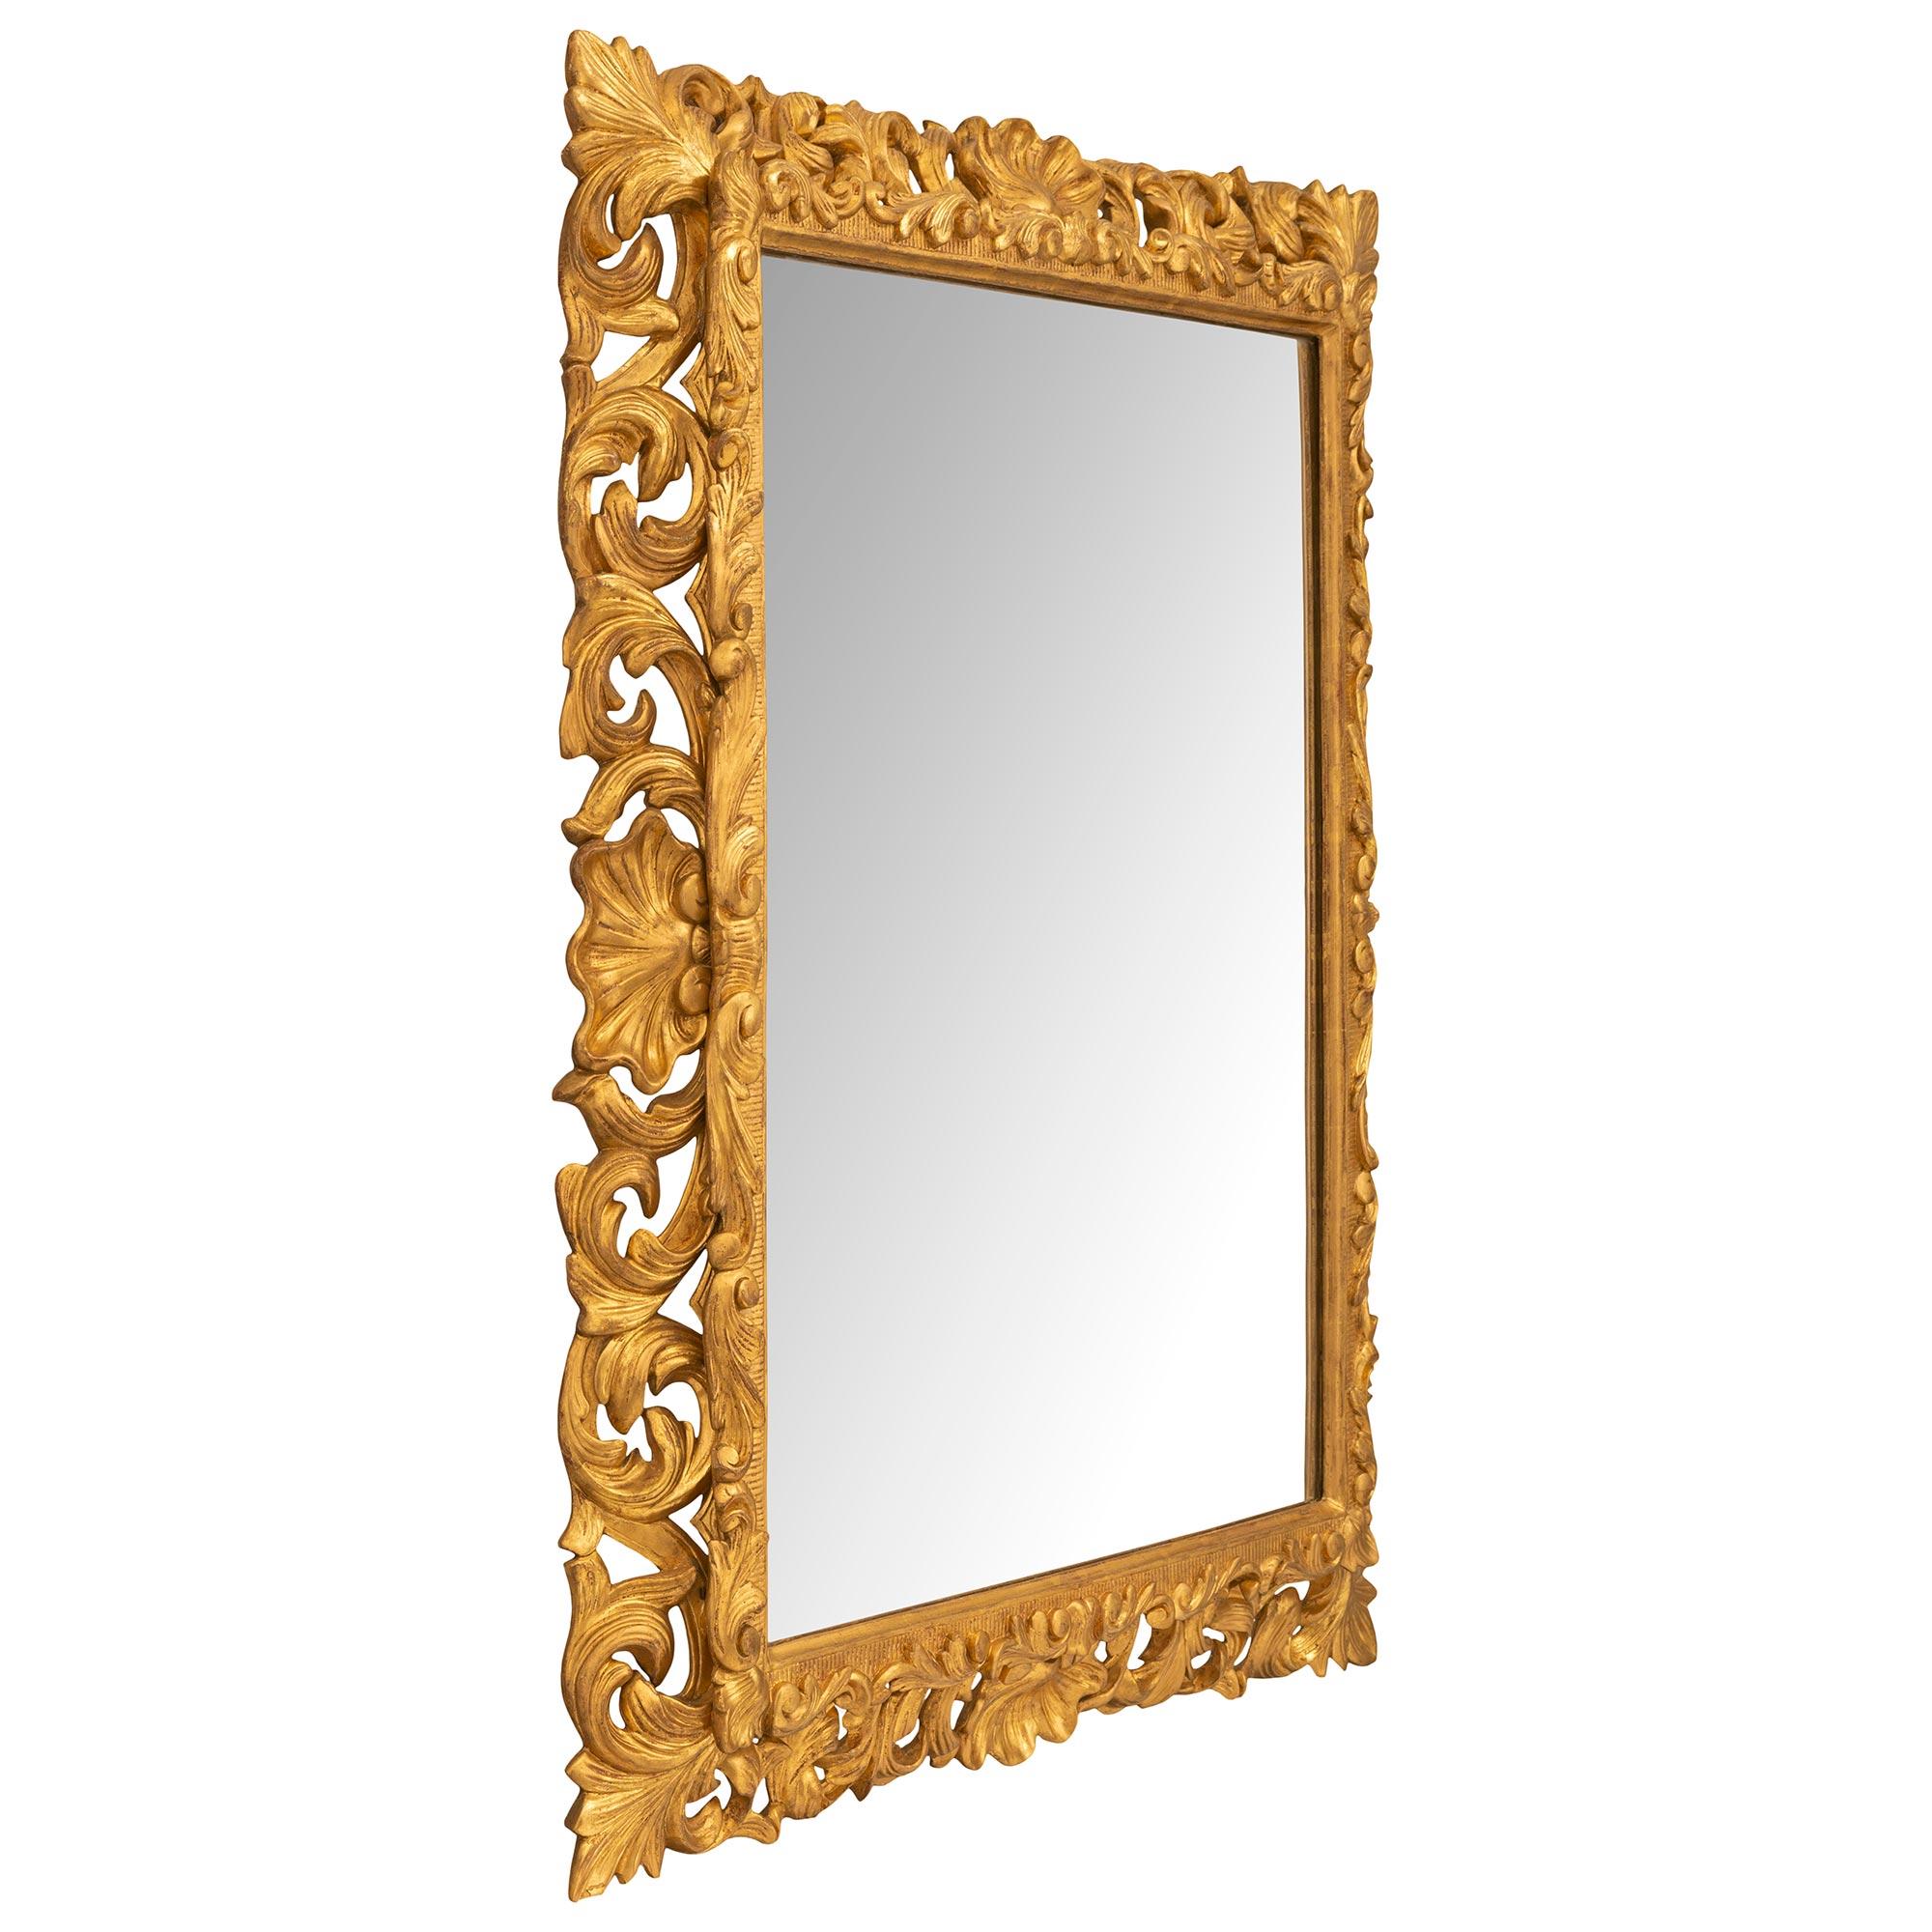 Magnifique miroir italien en bois doré de style Louis XV, datant du 19ème siècle et provenant de Florence. Le miroir conserve sa plaque d'origine encadrée d'une fine bordure droite tachetée avec de jolis motifs cannelés. Tout au long du cadre se